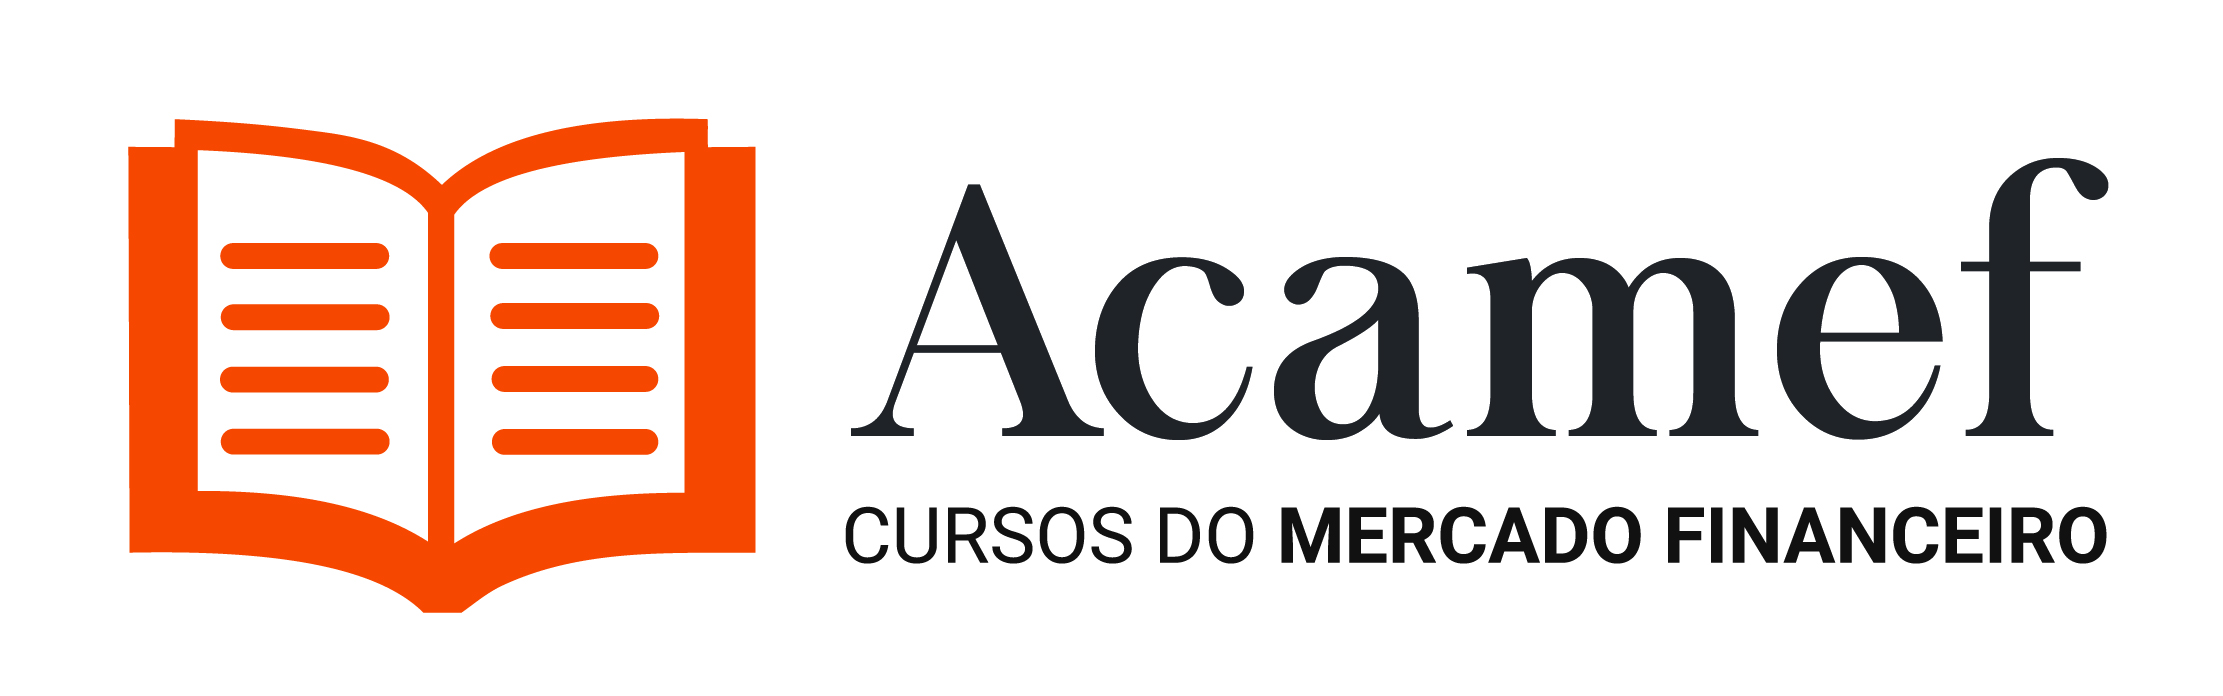 ACAMEF - Academia do Mercado Financeiro